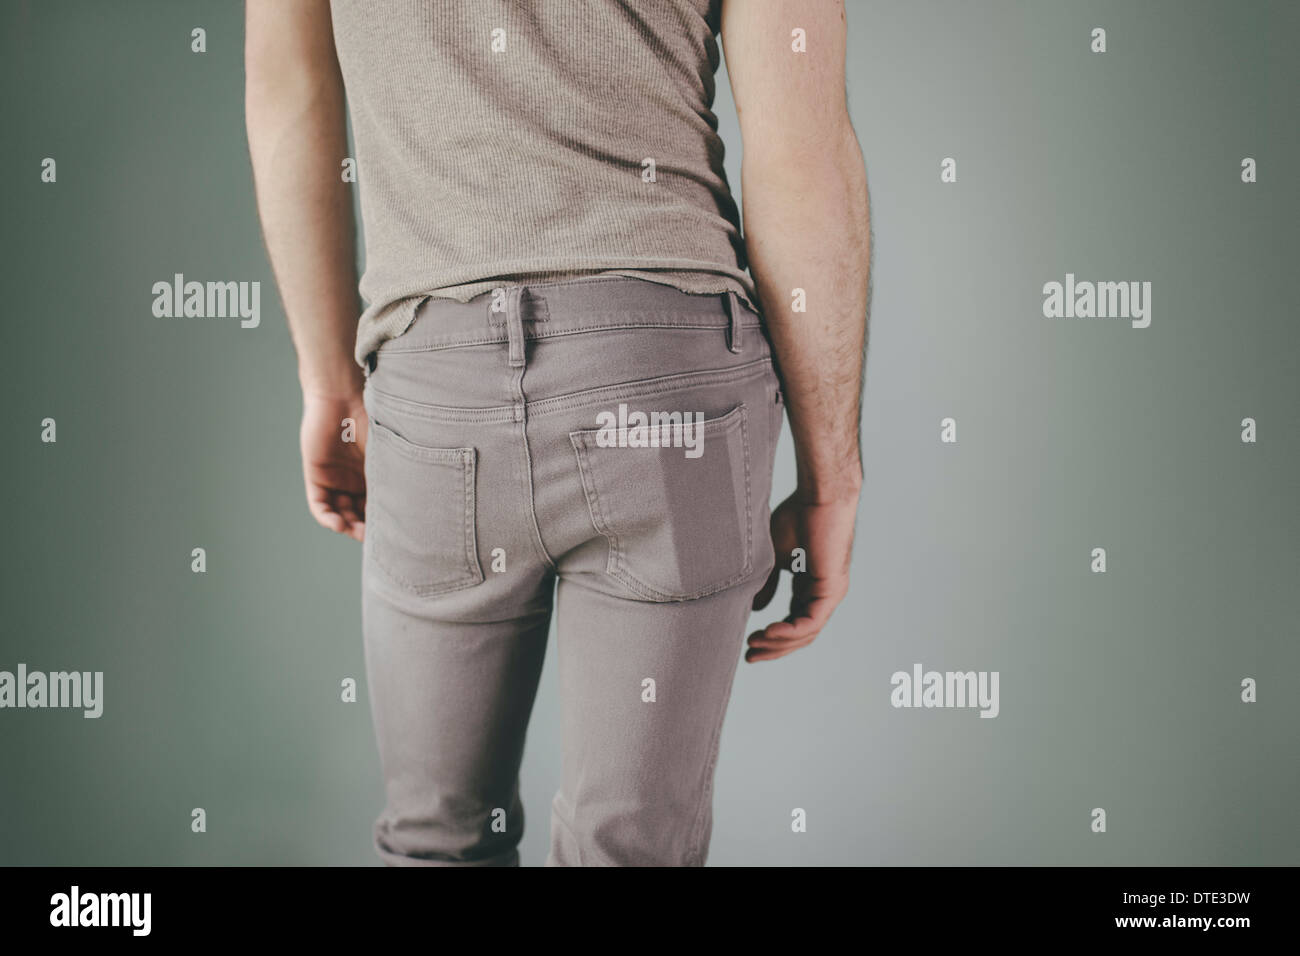 Teil der Serie zeigt verschiedene Möglichkeiten einer trägt eine Smartphone in der Rückentasche des engen jeans Stockfoto